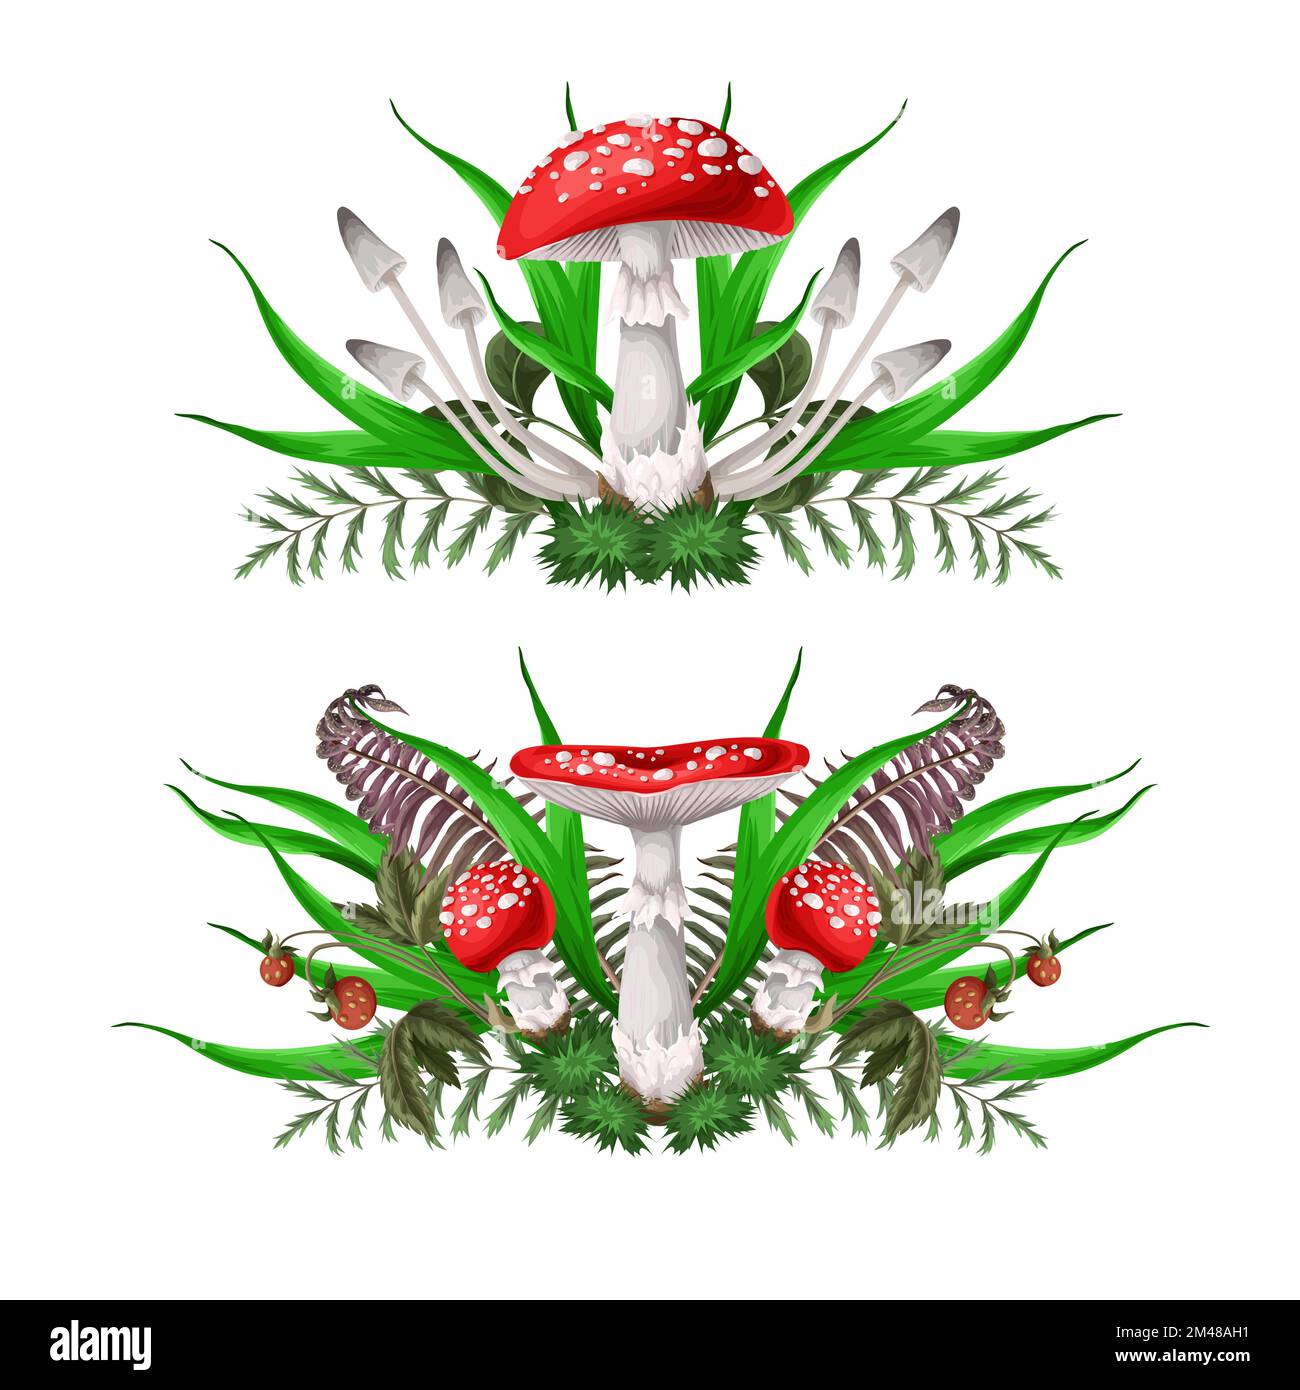 Composizioni con Fly agarics, funghi, e piante isolate. Vettore. Illustrazione Vettoriale